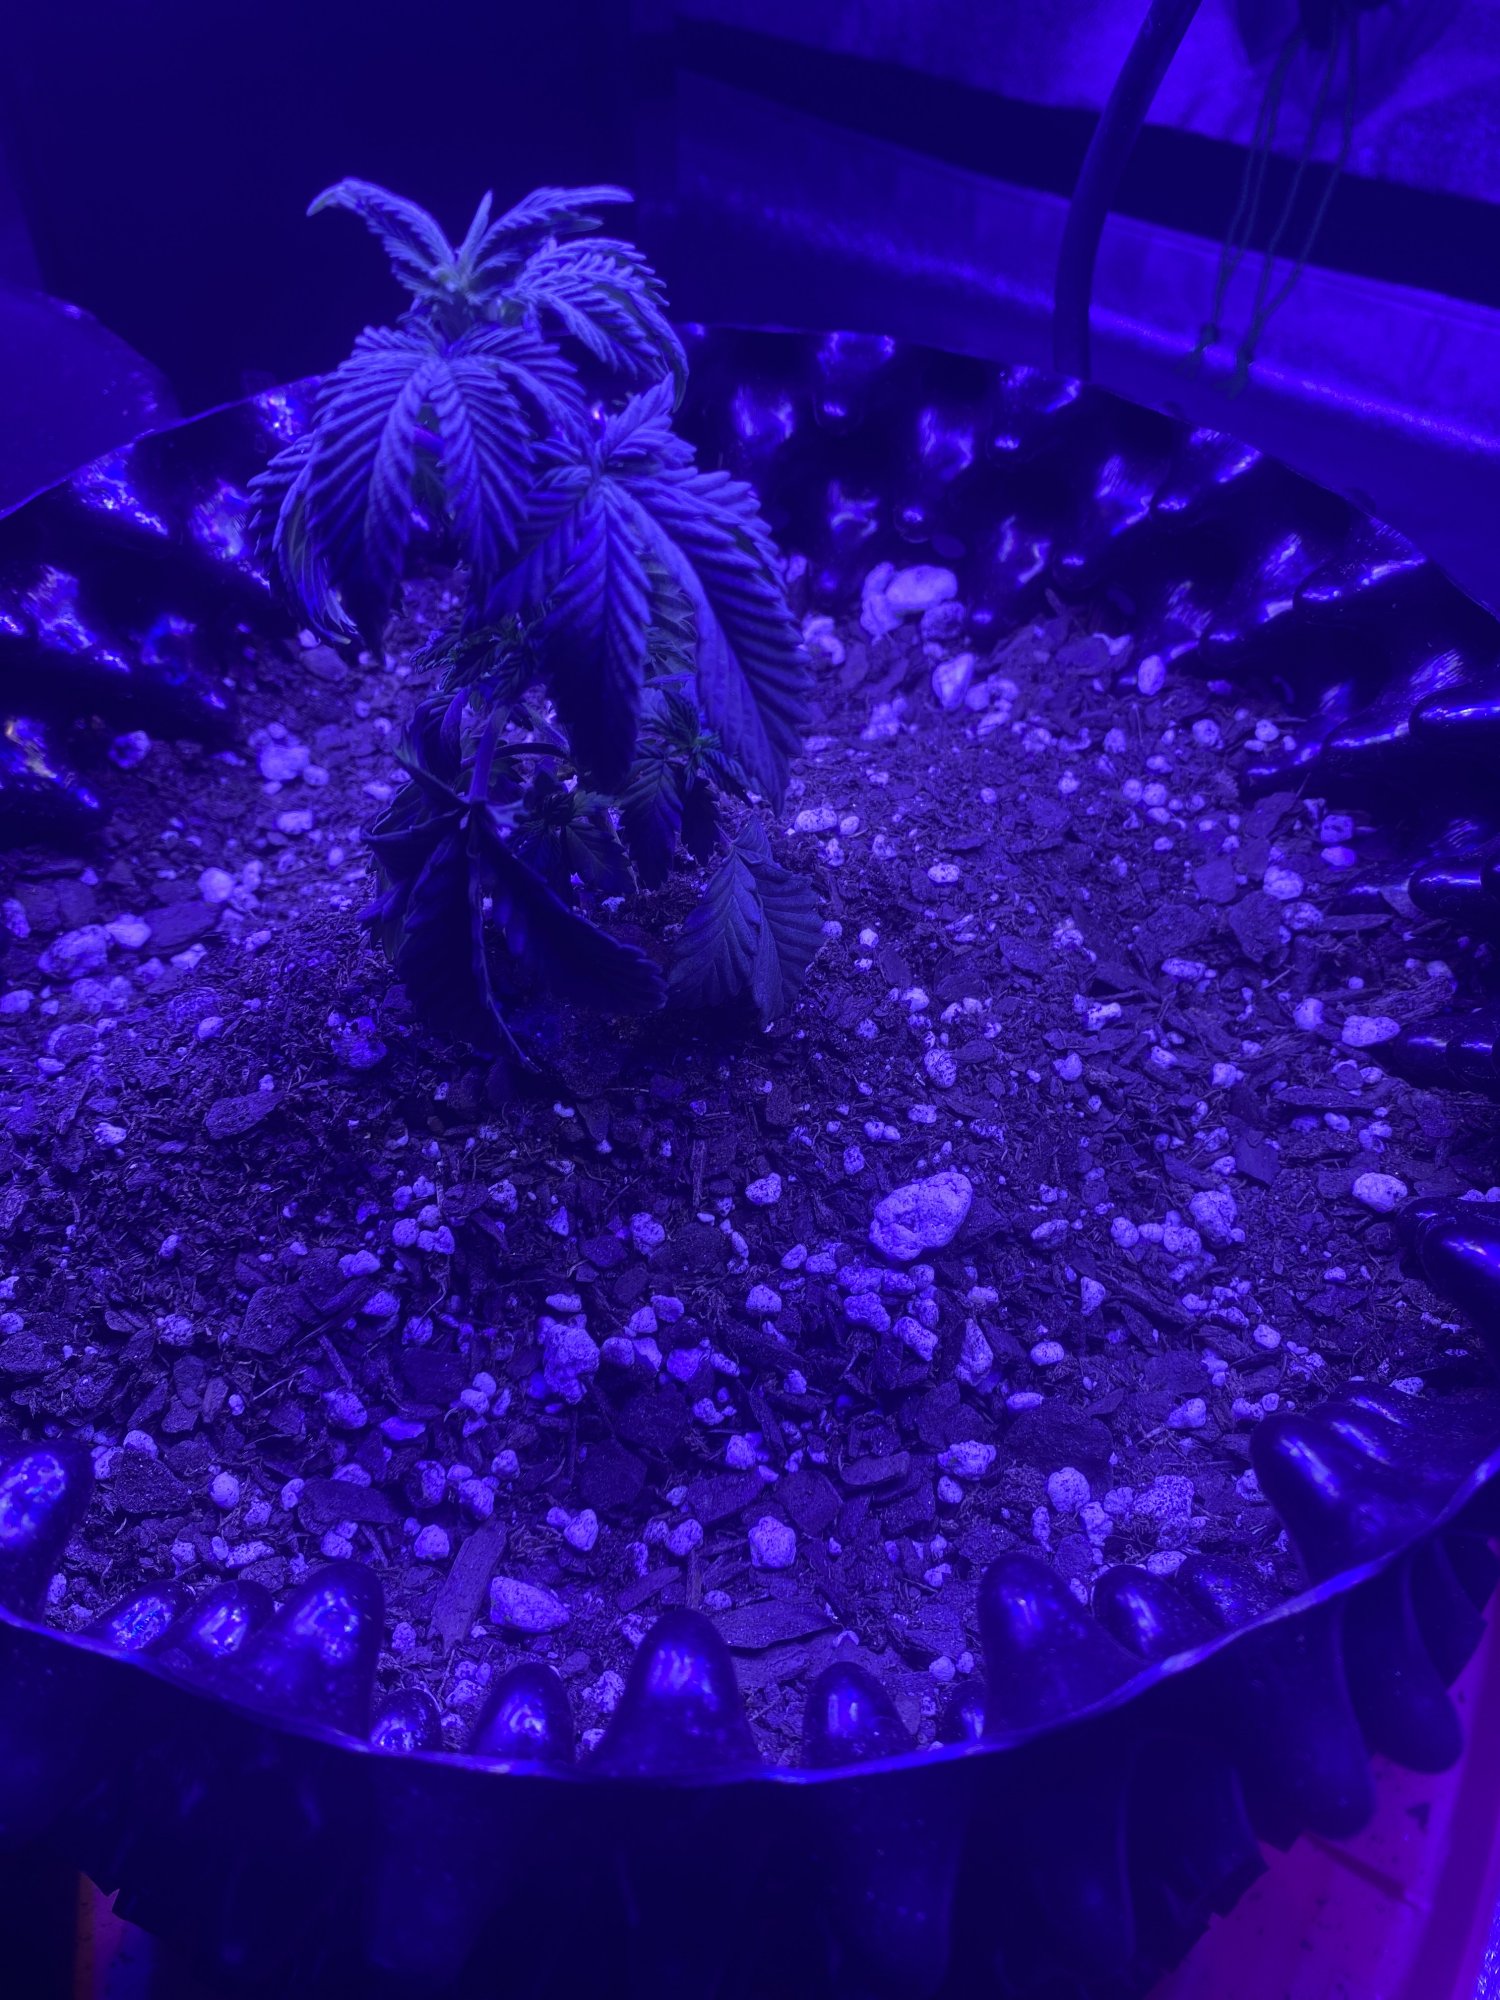 Help pleaseeeee first time grower 2